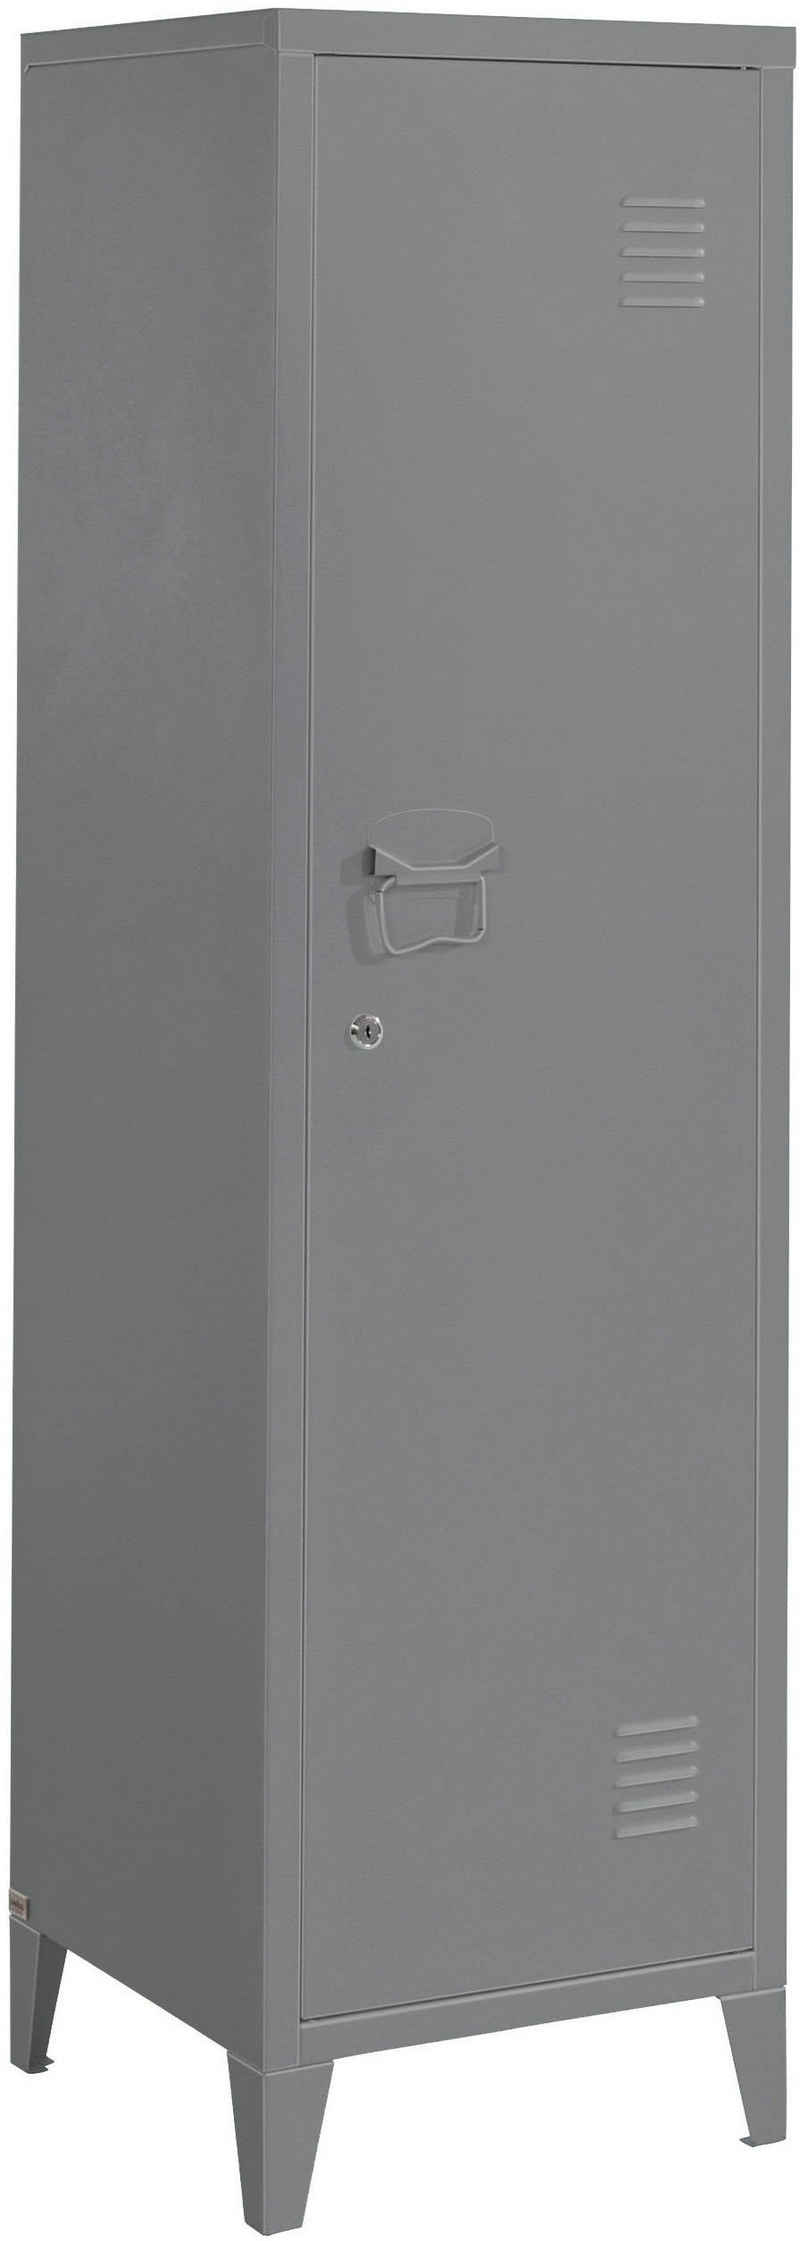 andas Midischrank Jensjorg Midischrank aus Metall, 2 x Einlegeböden hinter der Tür, Höhe 137 cm